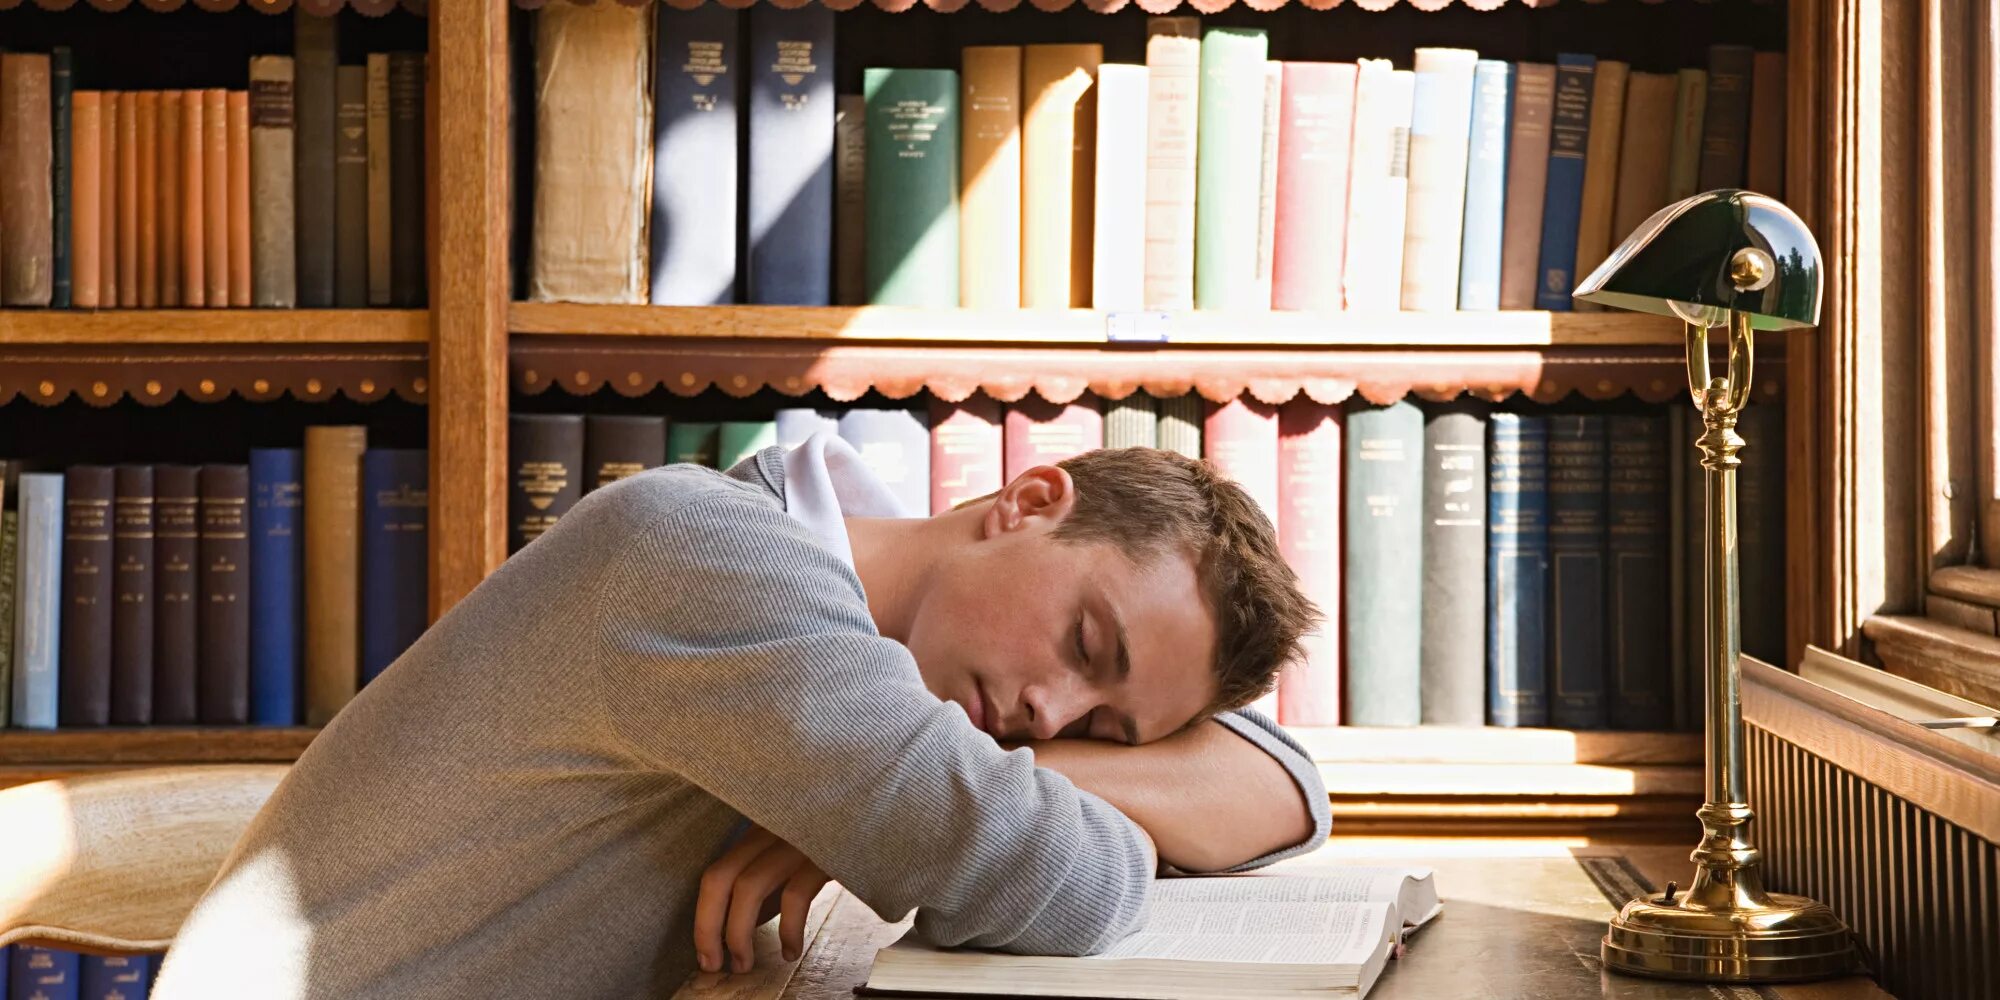 Читатель холодный. Уснул в библиотеке. Люди в читальном зале. Парень читатель.